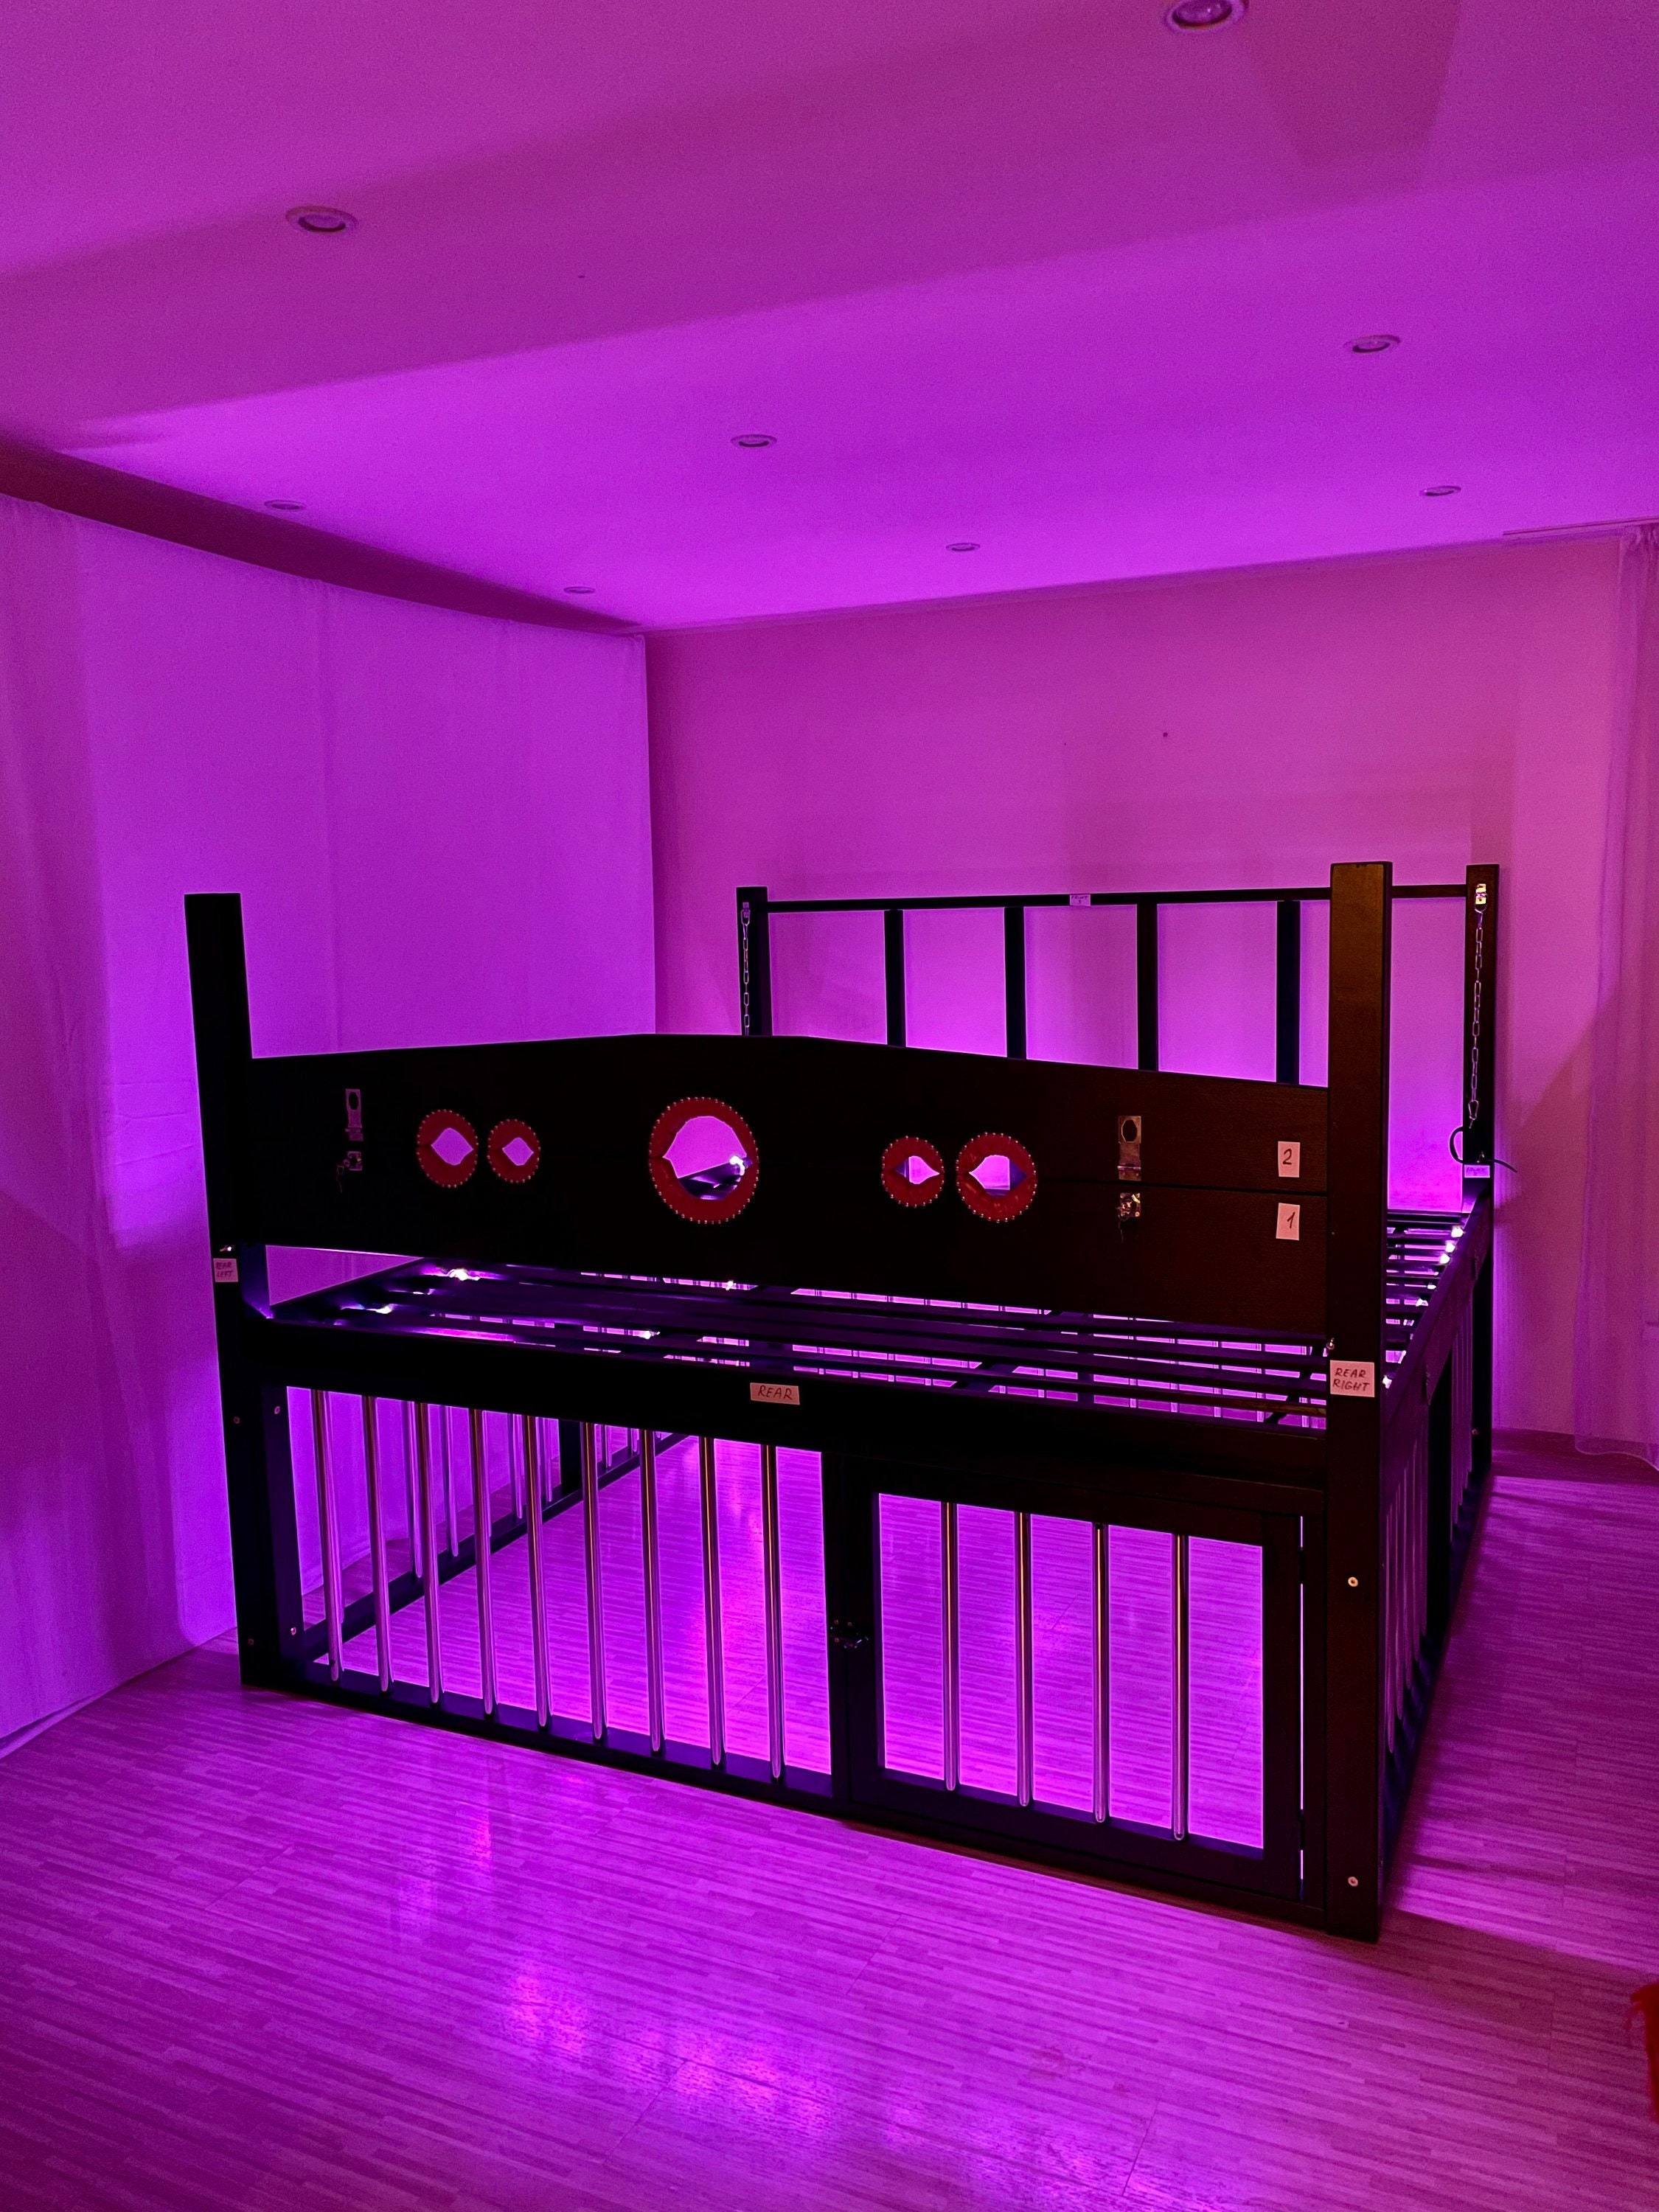 Bondage Bed With Cage And Light Bedroom Fetish Bed Fetish Toys Bondage Furniture Bdsm Room For 